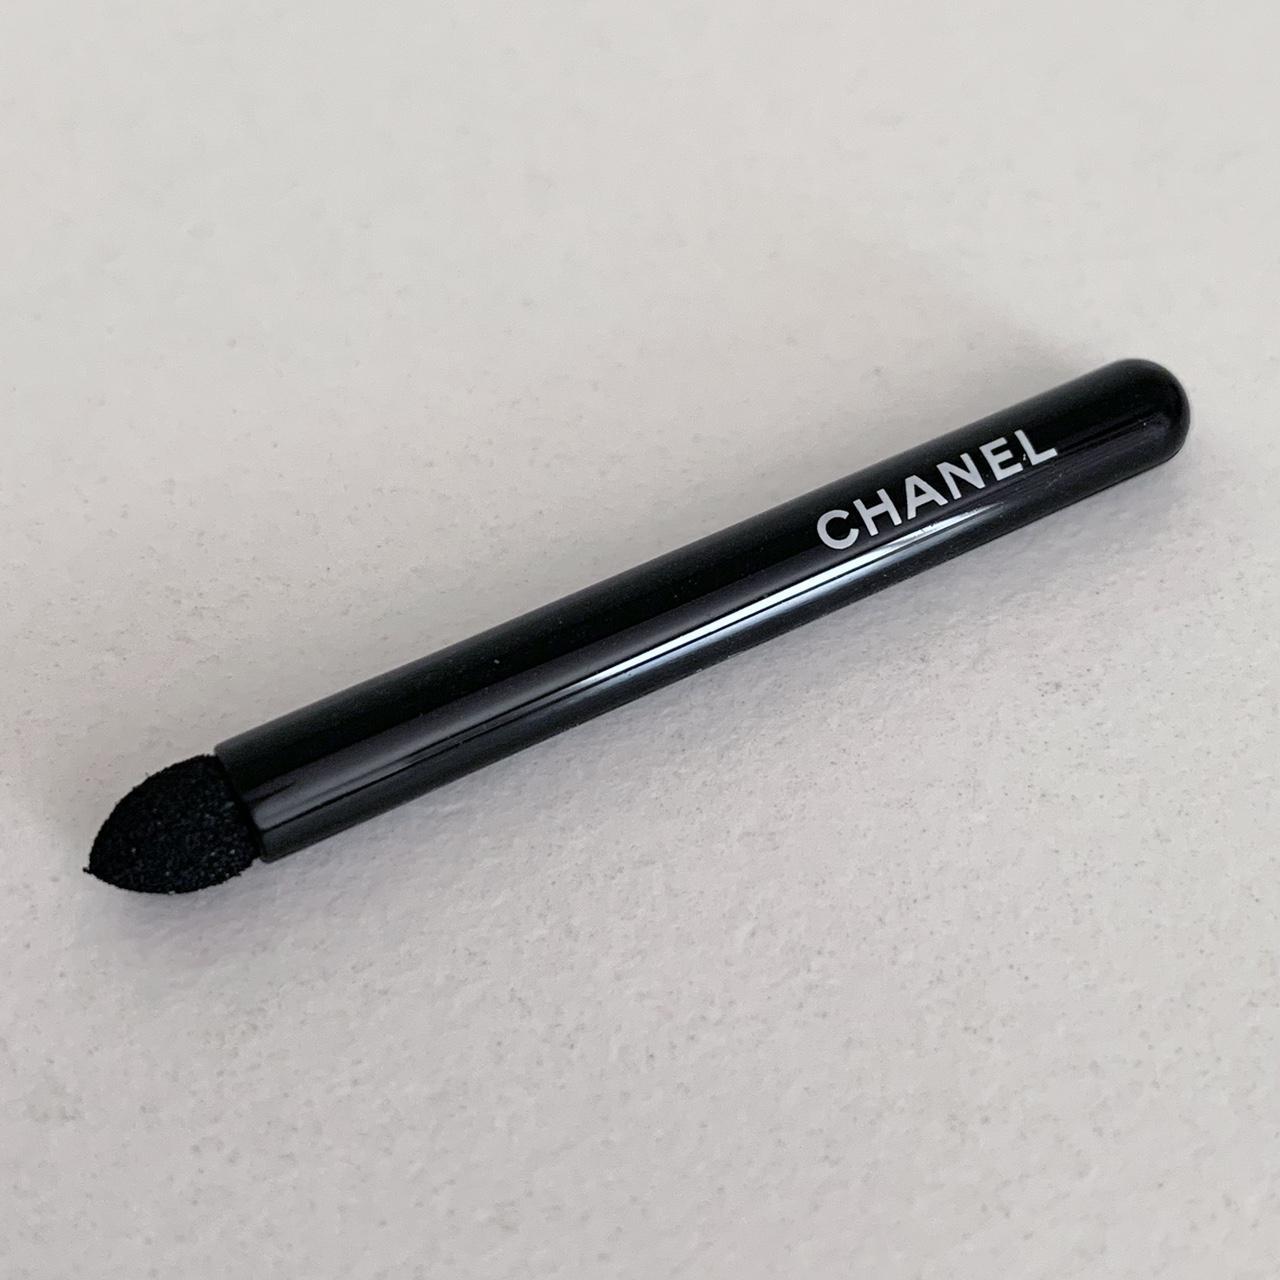 Brand new. Never used. Chanel mini sponge brush. - Depop